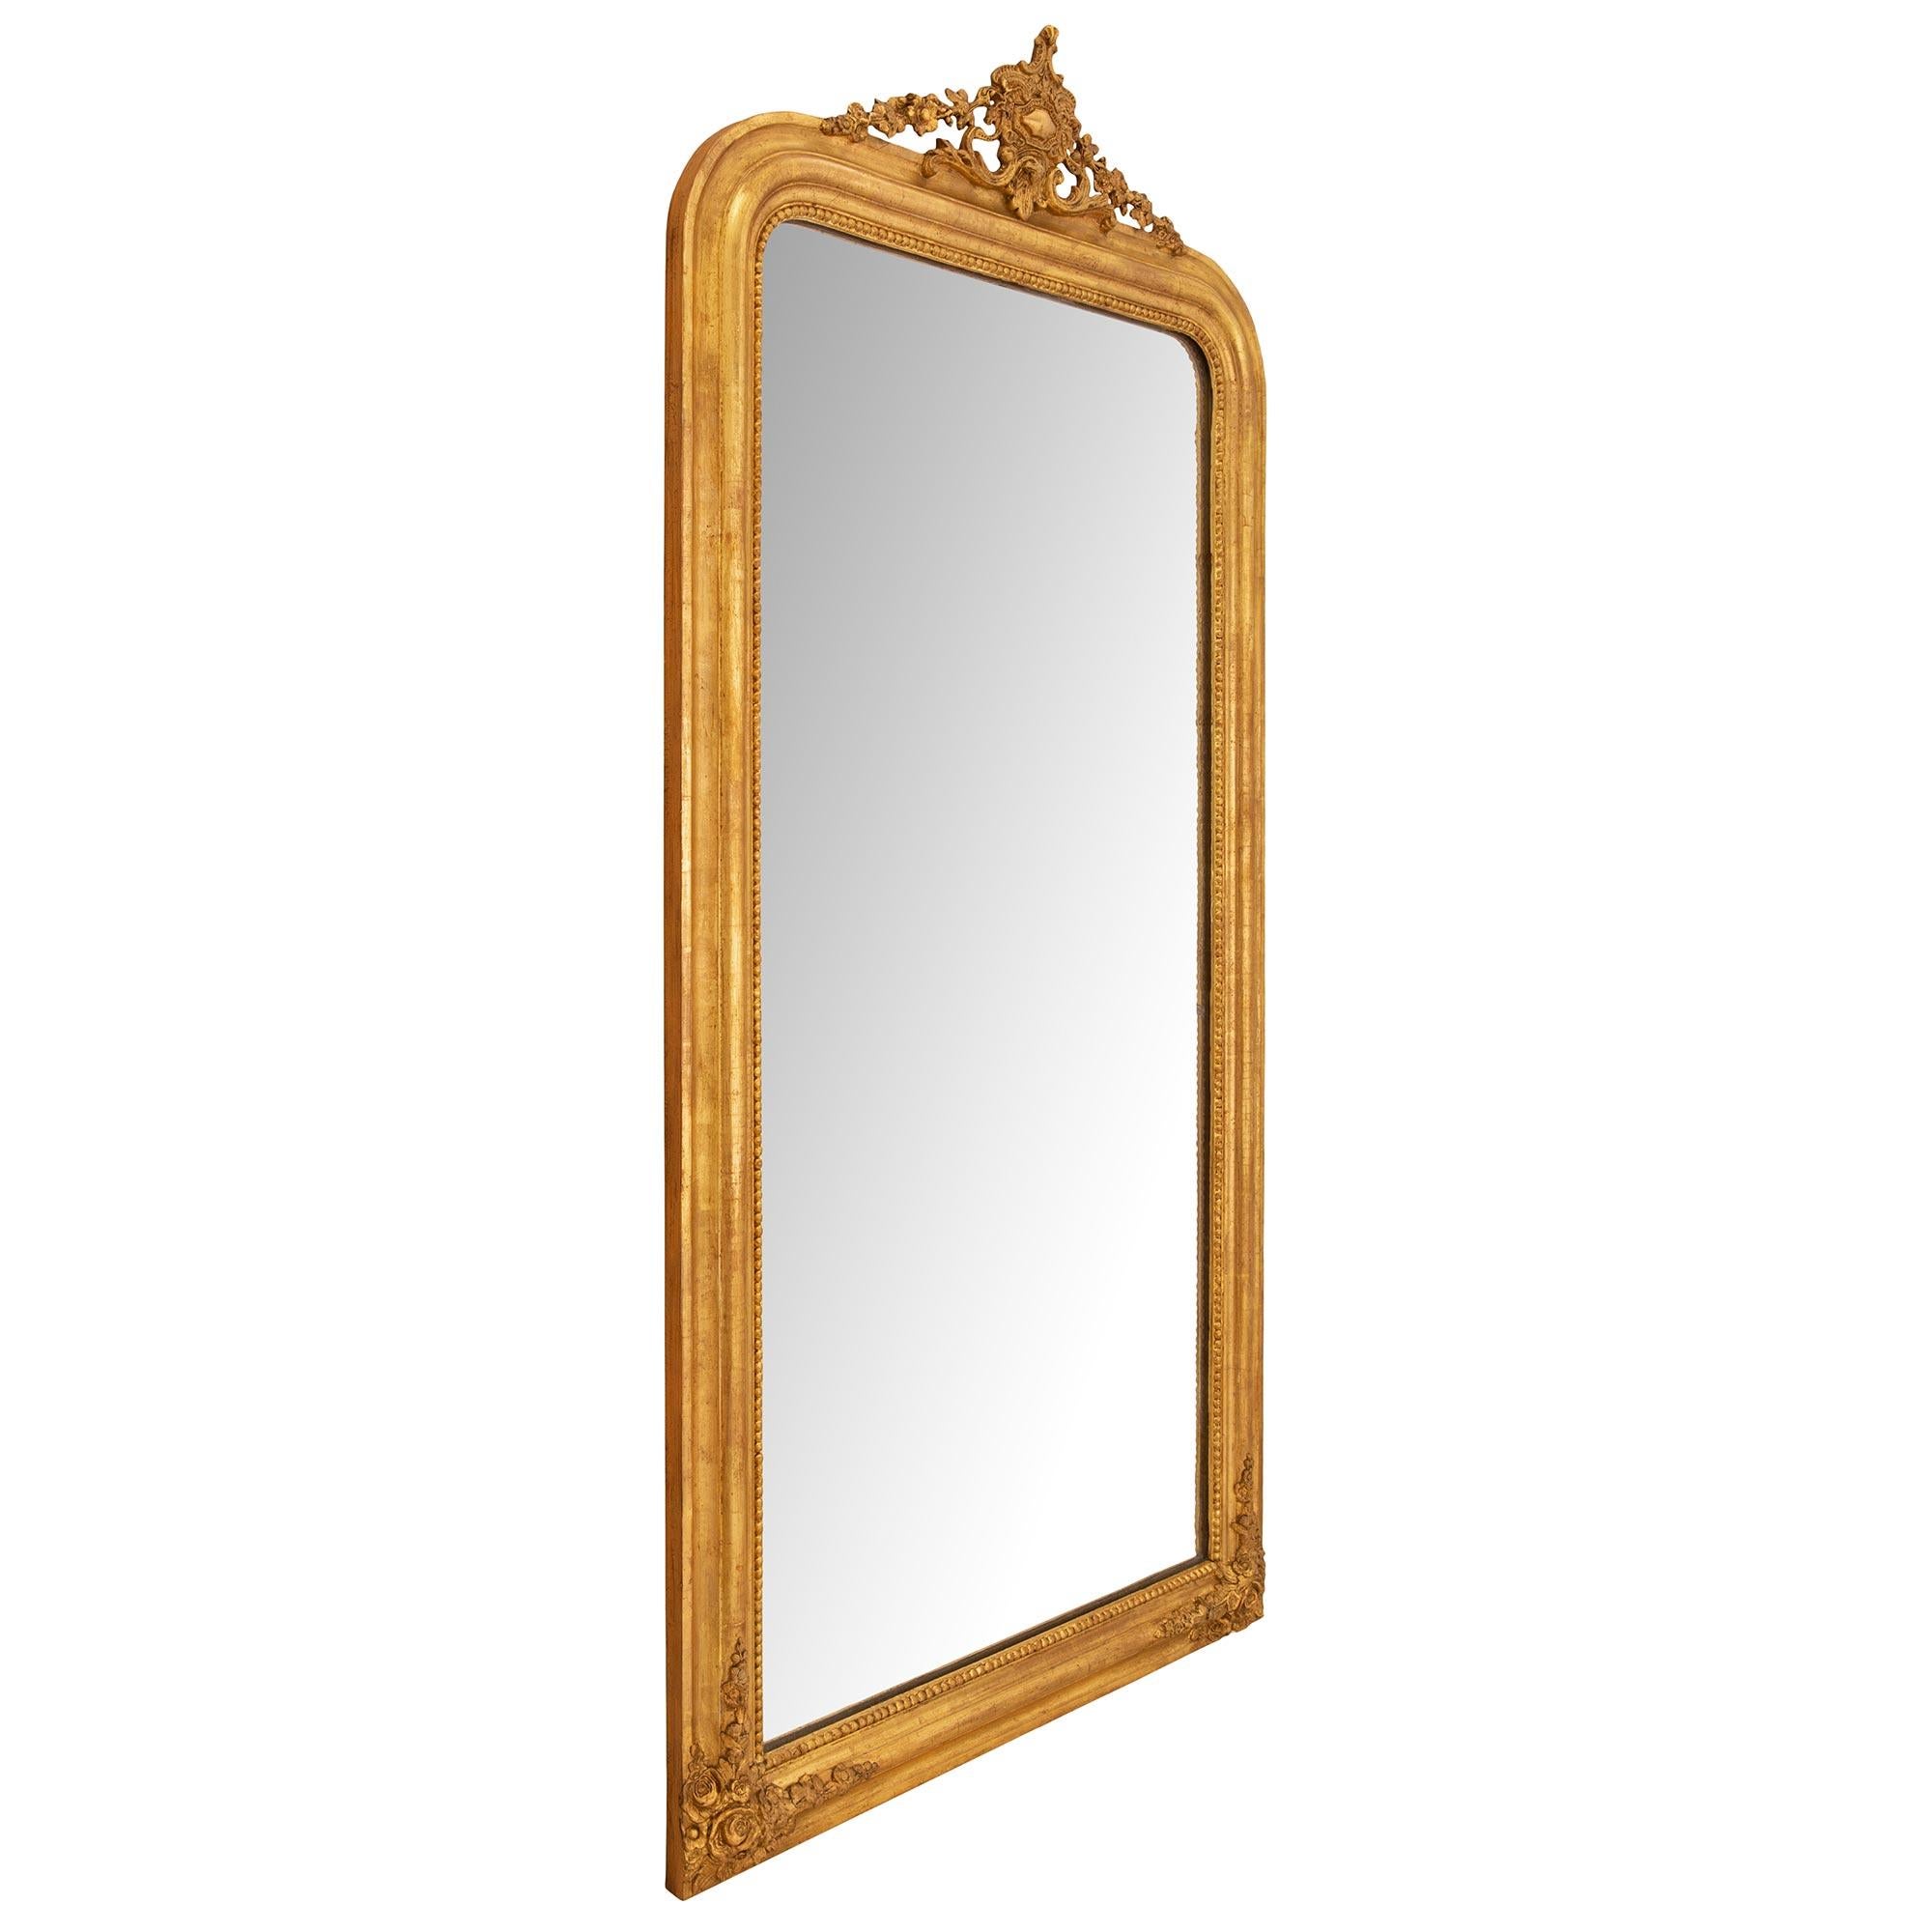 Un élégant miroir en bois doré français du 19ème siècle de la période Louis Philippe. Le miroir a conservé sa plaque d'origine, enchâssée dans une fine bande perlée. Le cadre moucheté présente de charmantes fleurs épanouies richement sculptées à